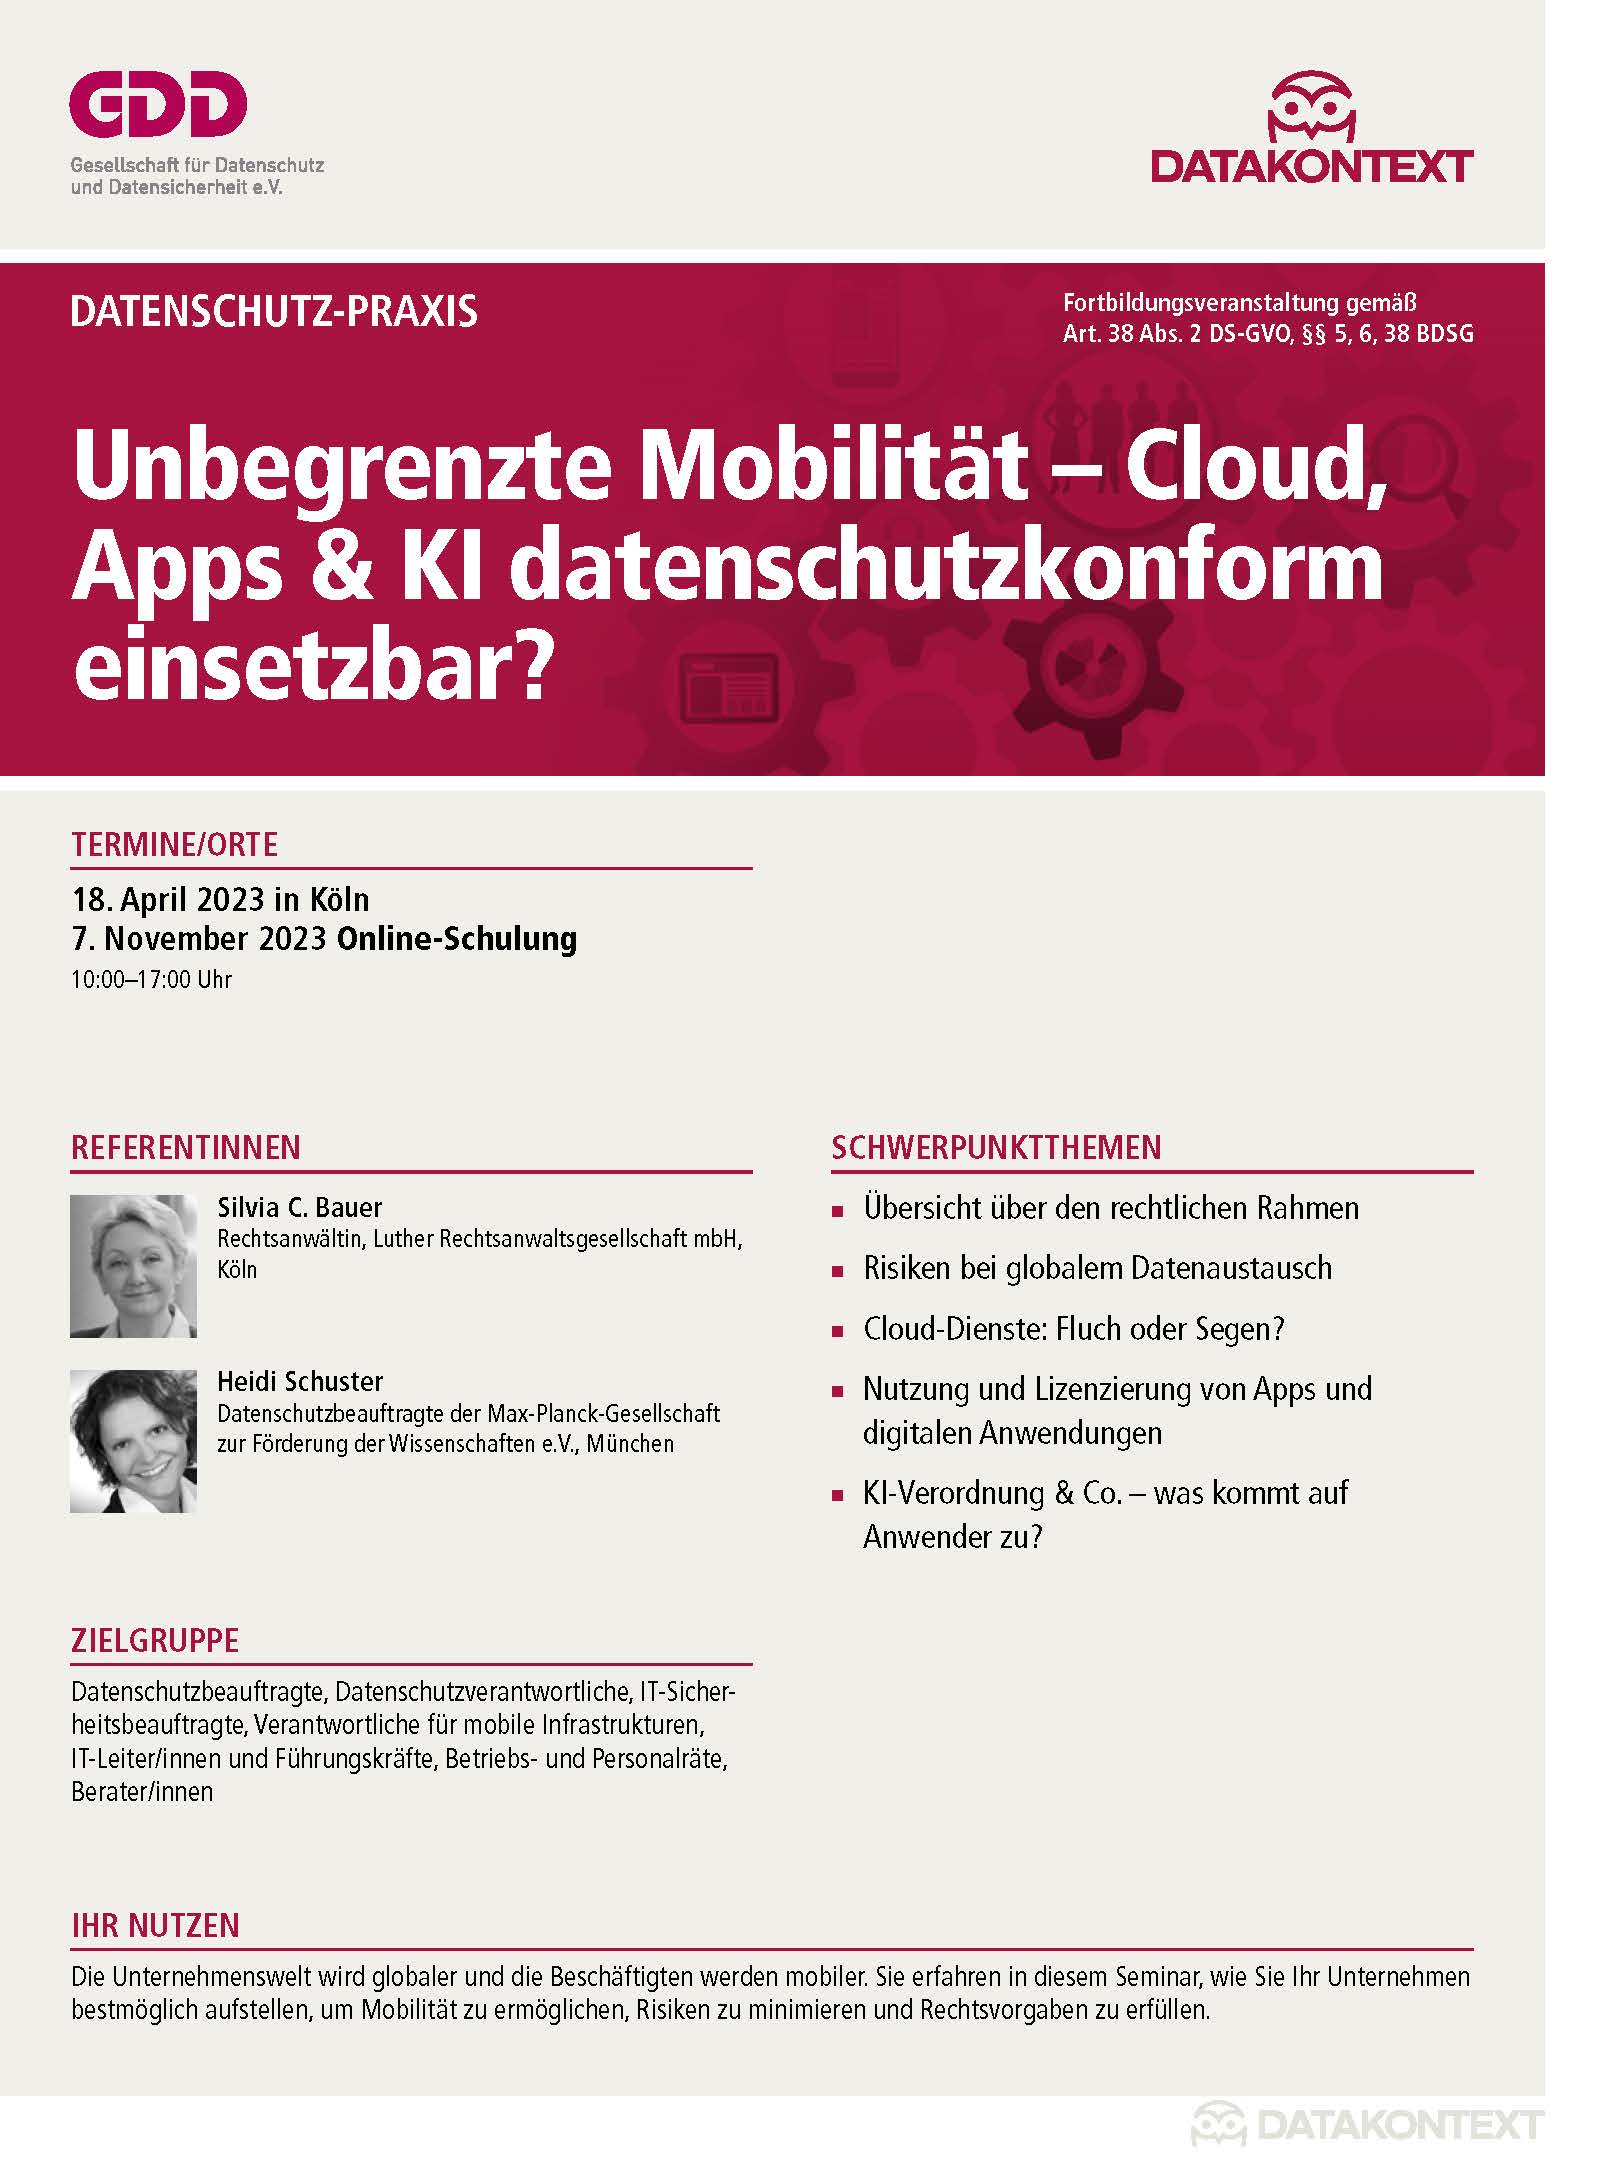 Unbegrenzte Mobilität – Cloud, Apps & KI datenschutzkonform einsetzbar?